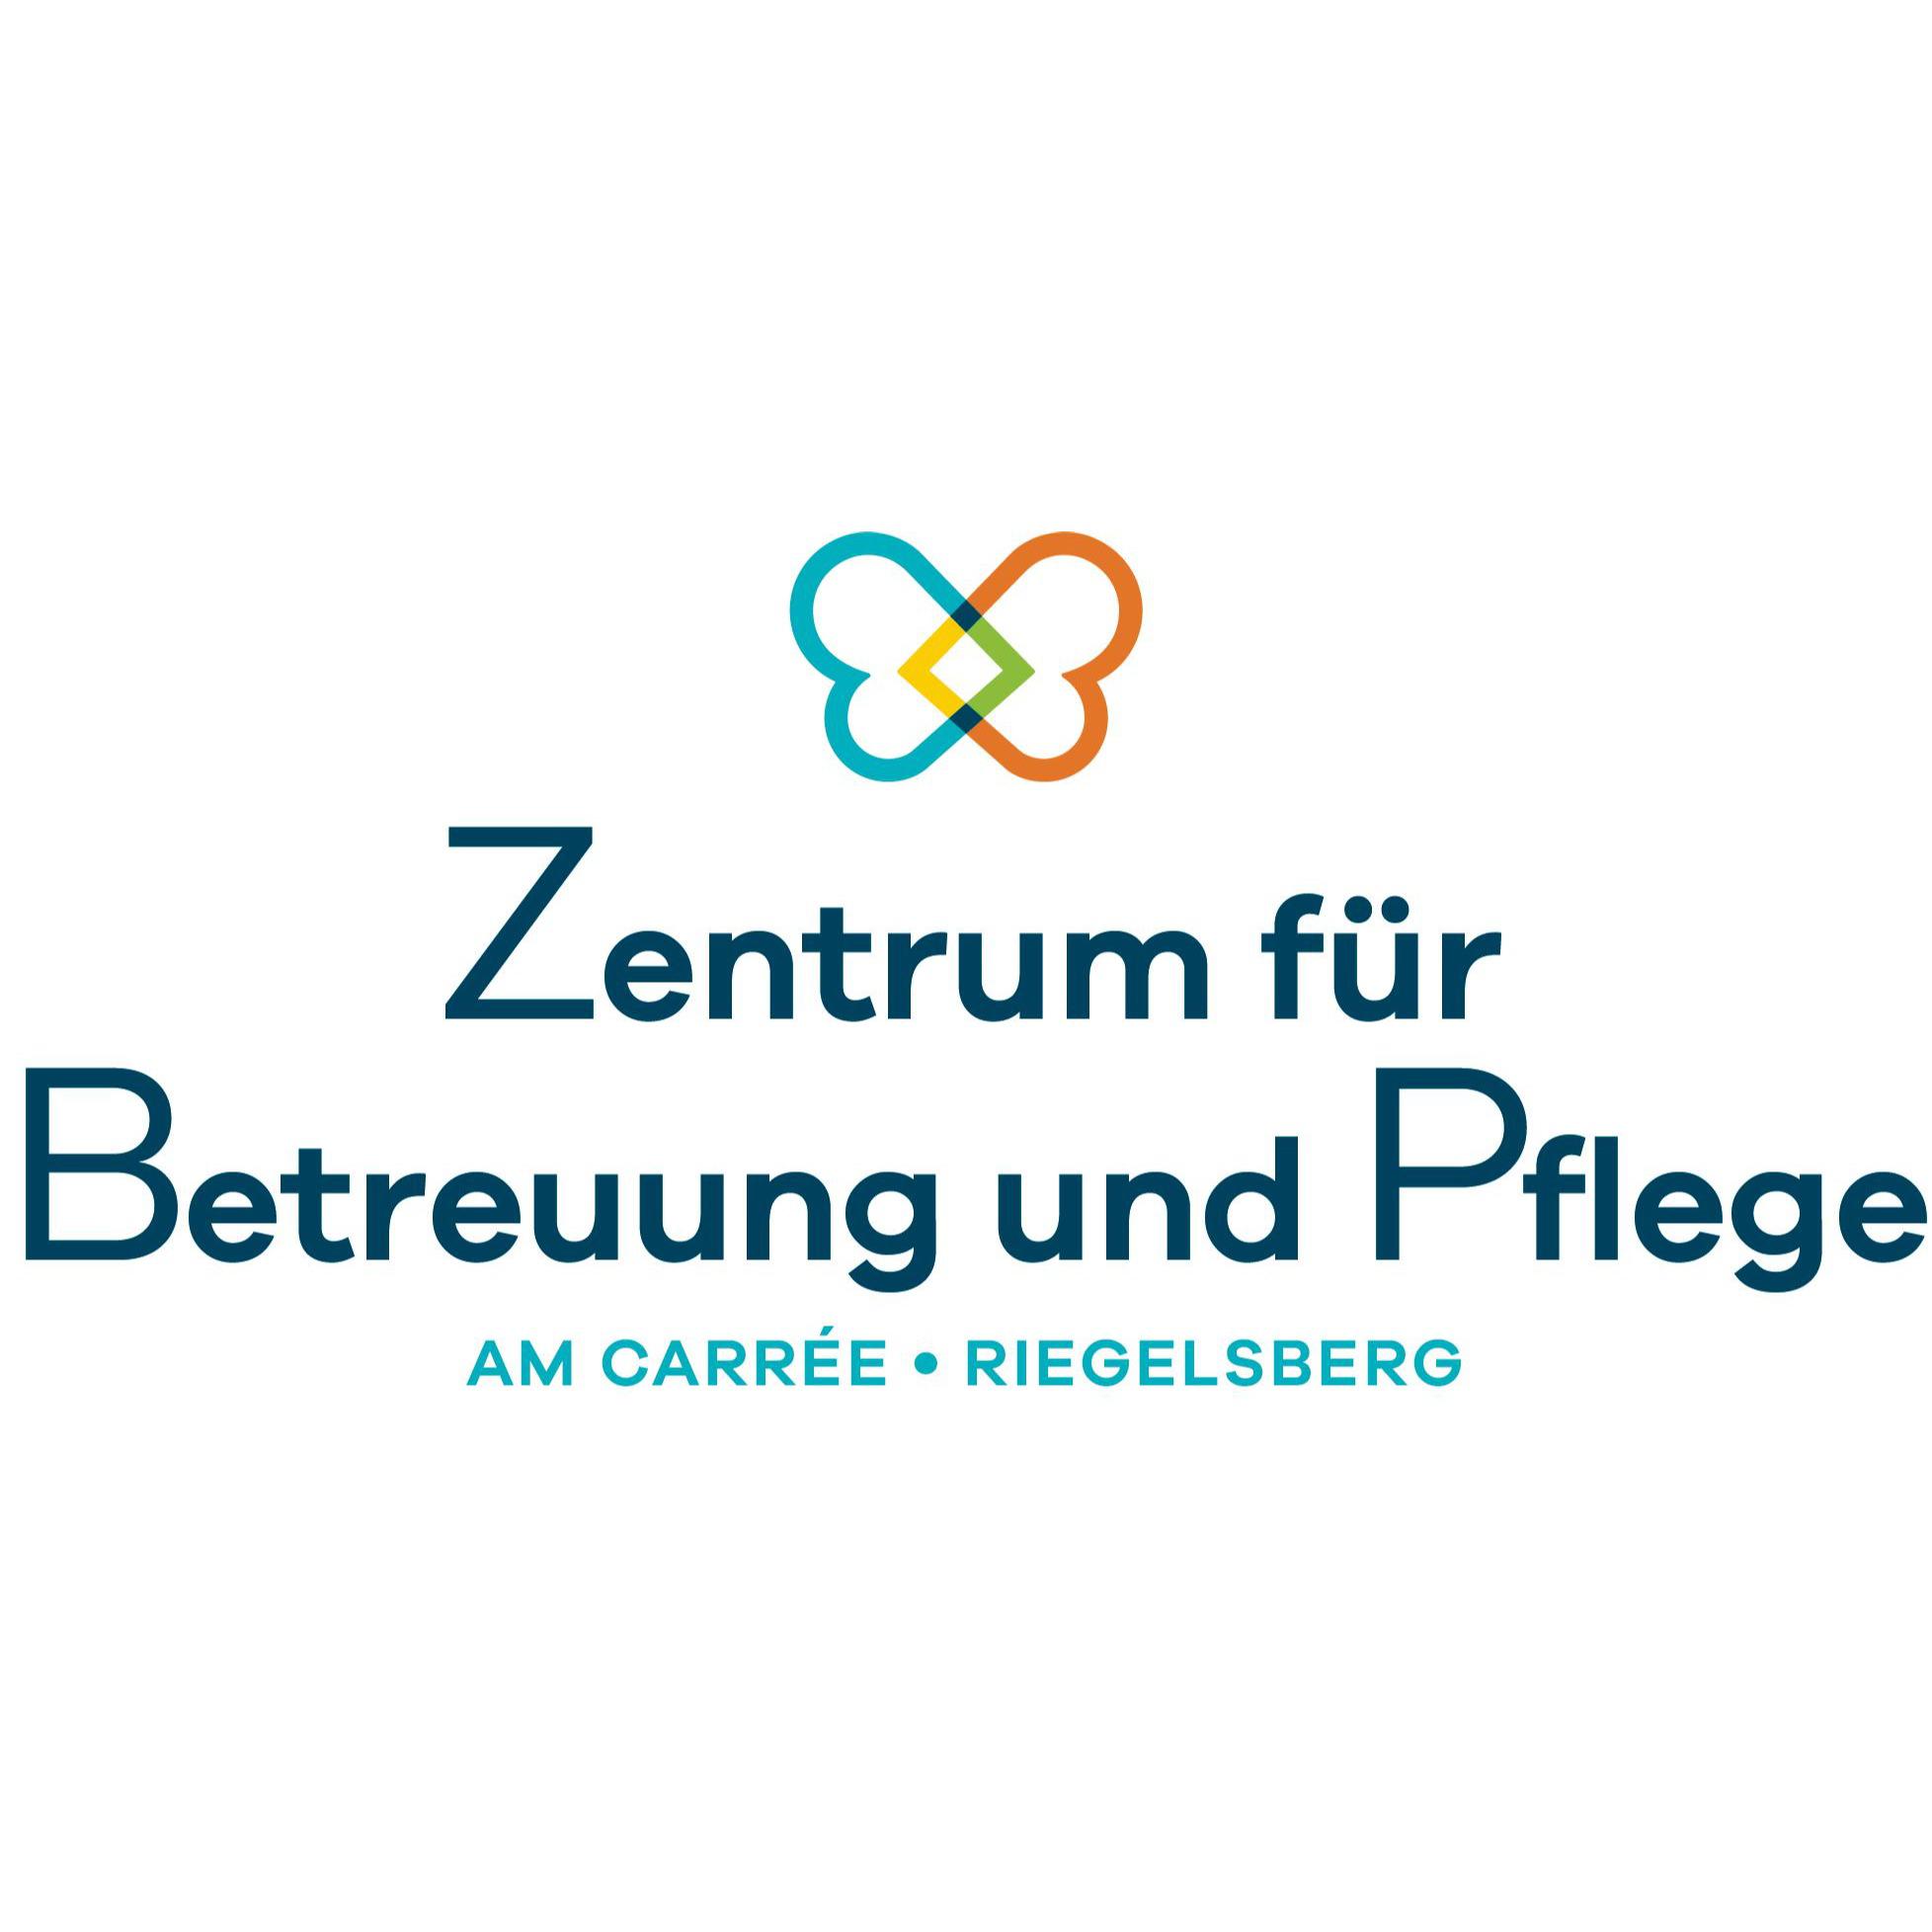 Zentrum für Betreuung und Pflege am Carree Riegelsberg in Riegelsberg - Logo